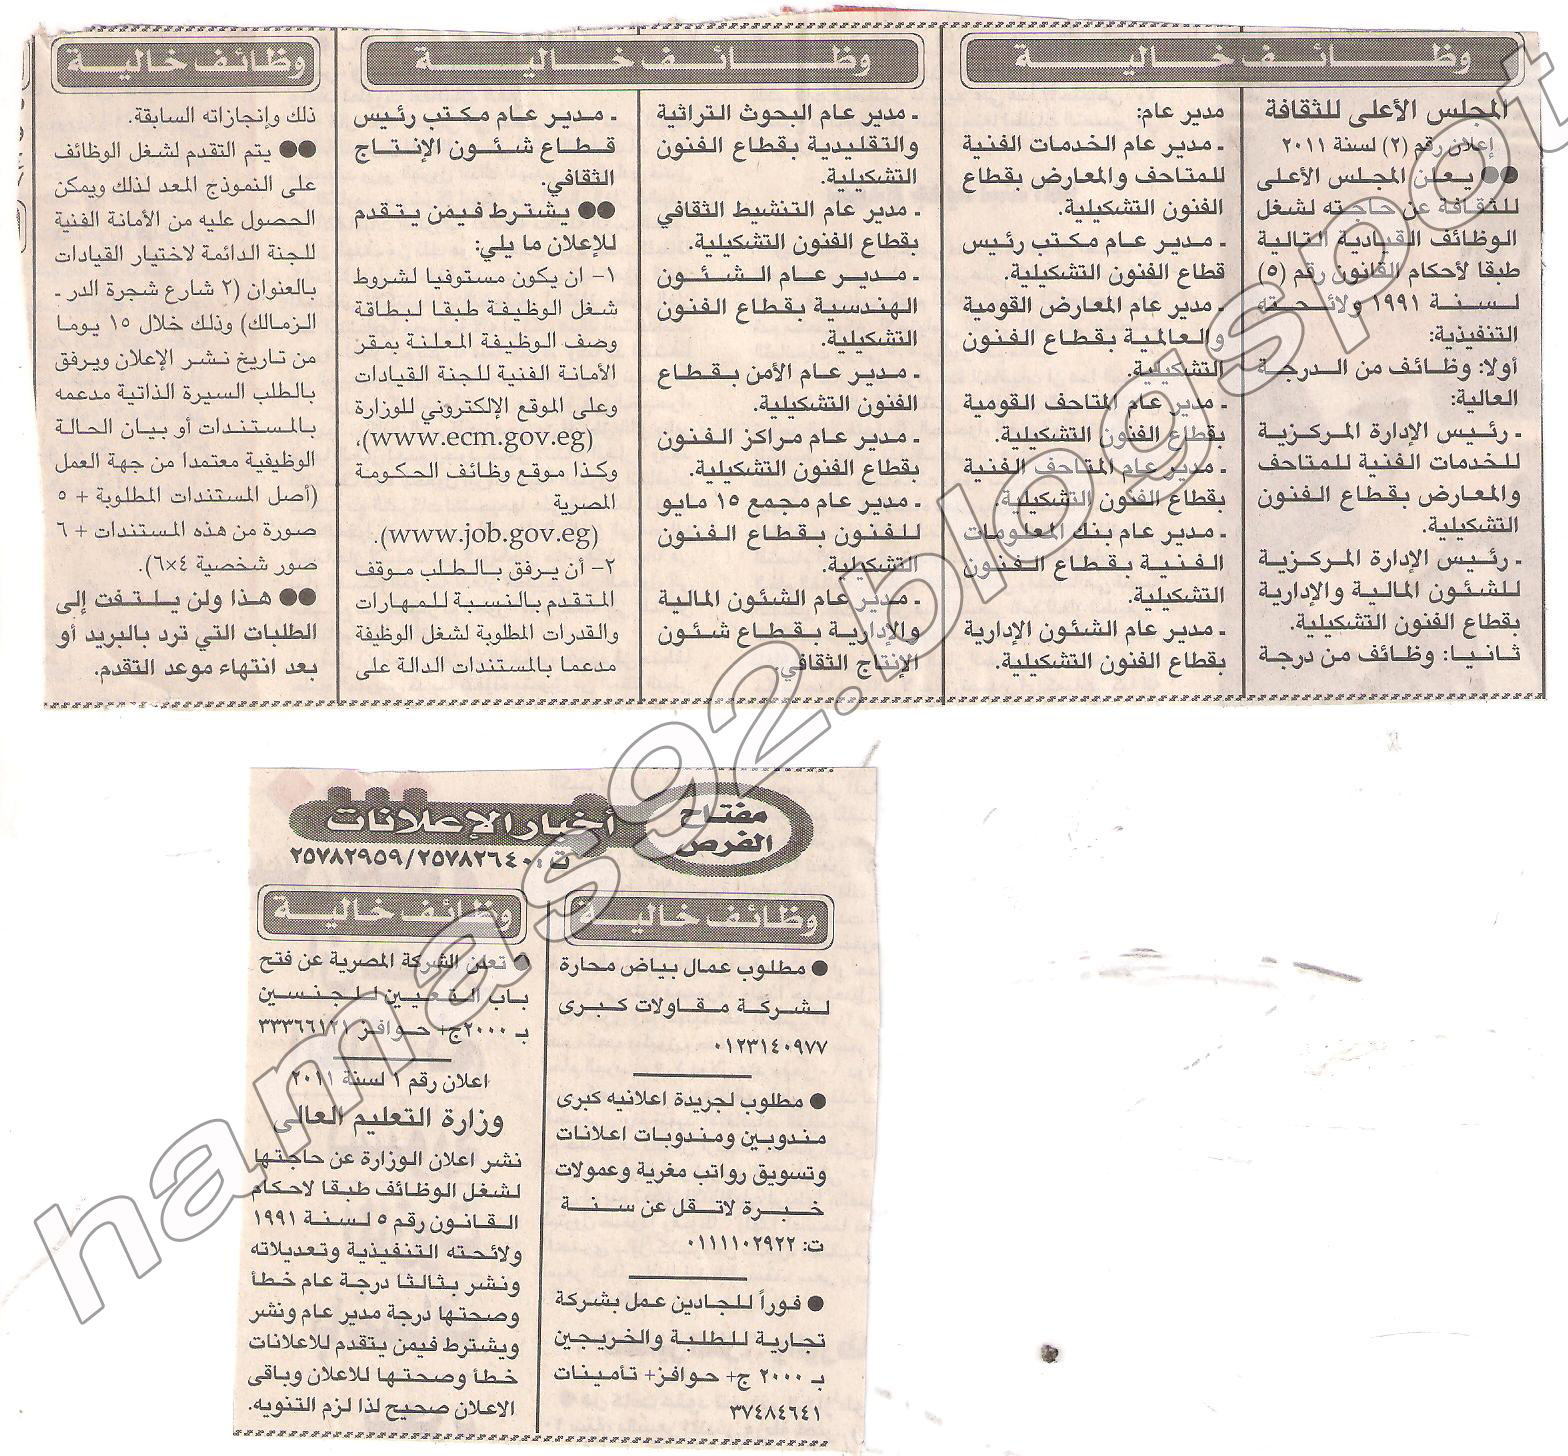 وظائف جريدة الاخبار الثلاثاء 24 مايو 2011 - وظائف الصحف المصرية الثلاثاء 24 مايو 2011 Picture+001